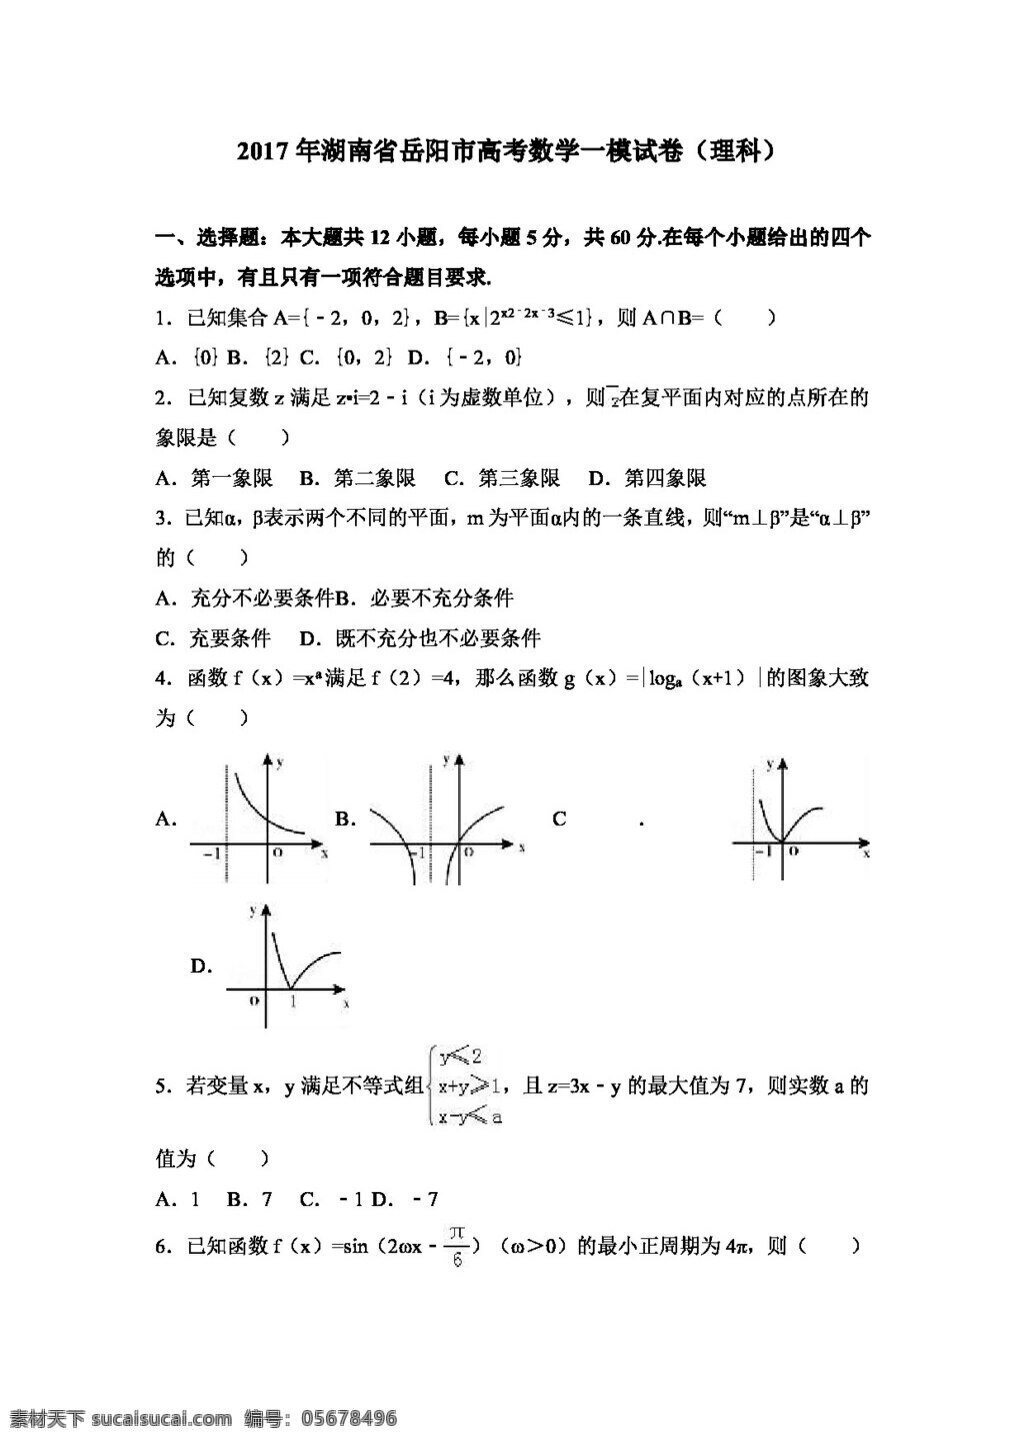 数学 人教 版 2017 年 湖南省 岳阳市 高考 模 试卷 理科 高考专区 人教版